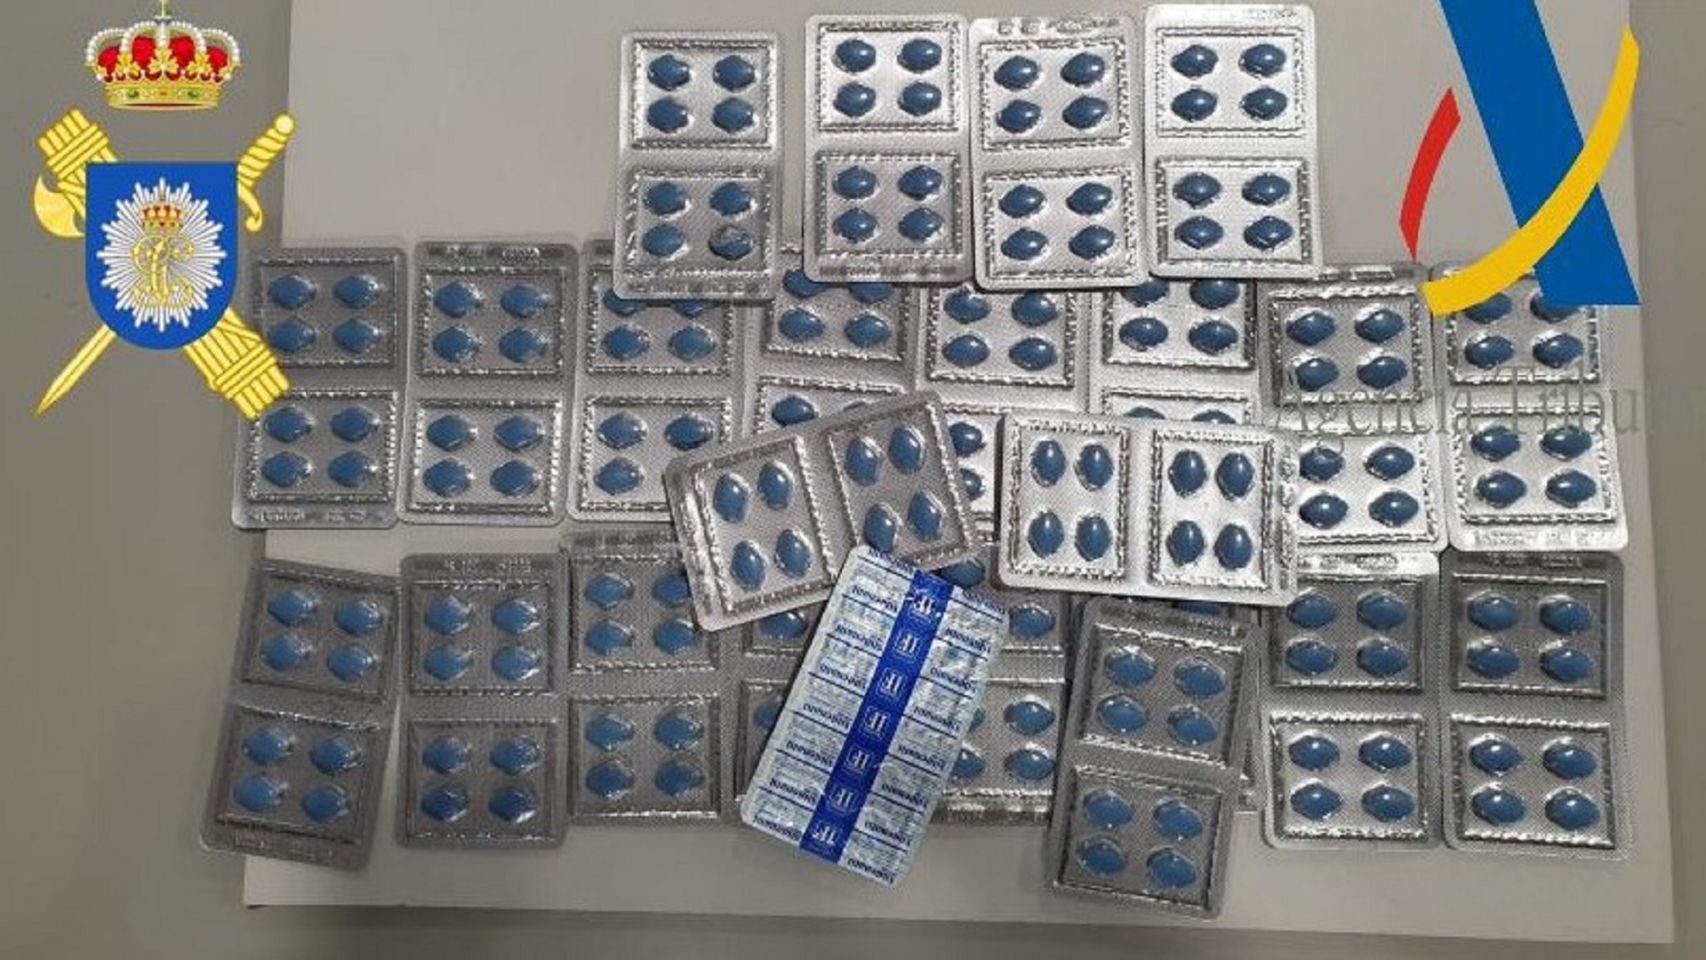 Las pastillas de Sildenafil aprehendidas en el aeropuerto de Alvedro (A Coruña).